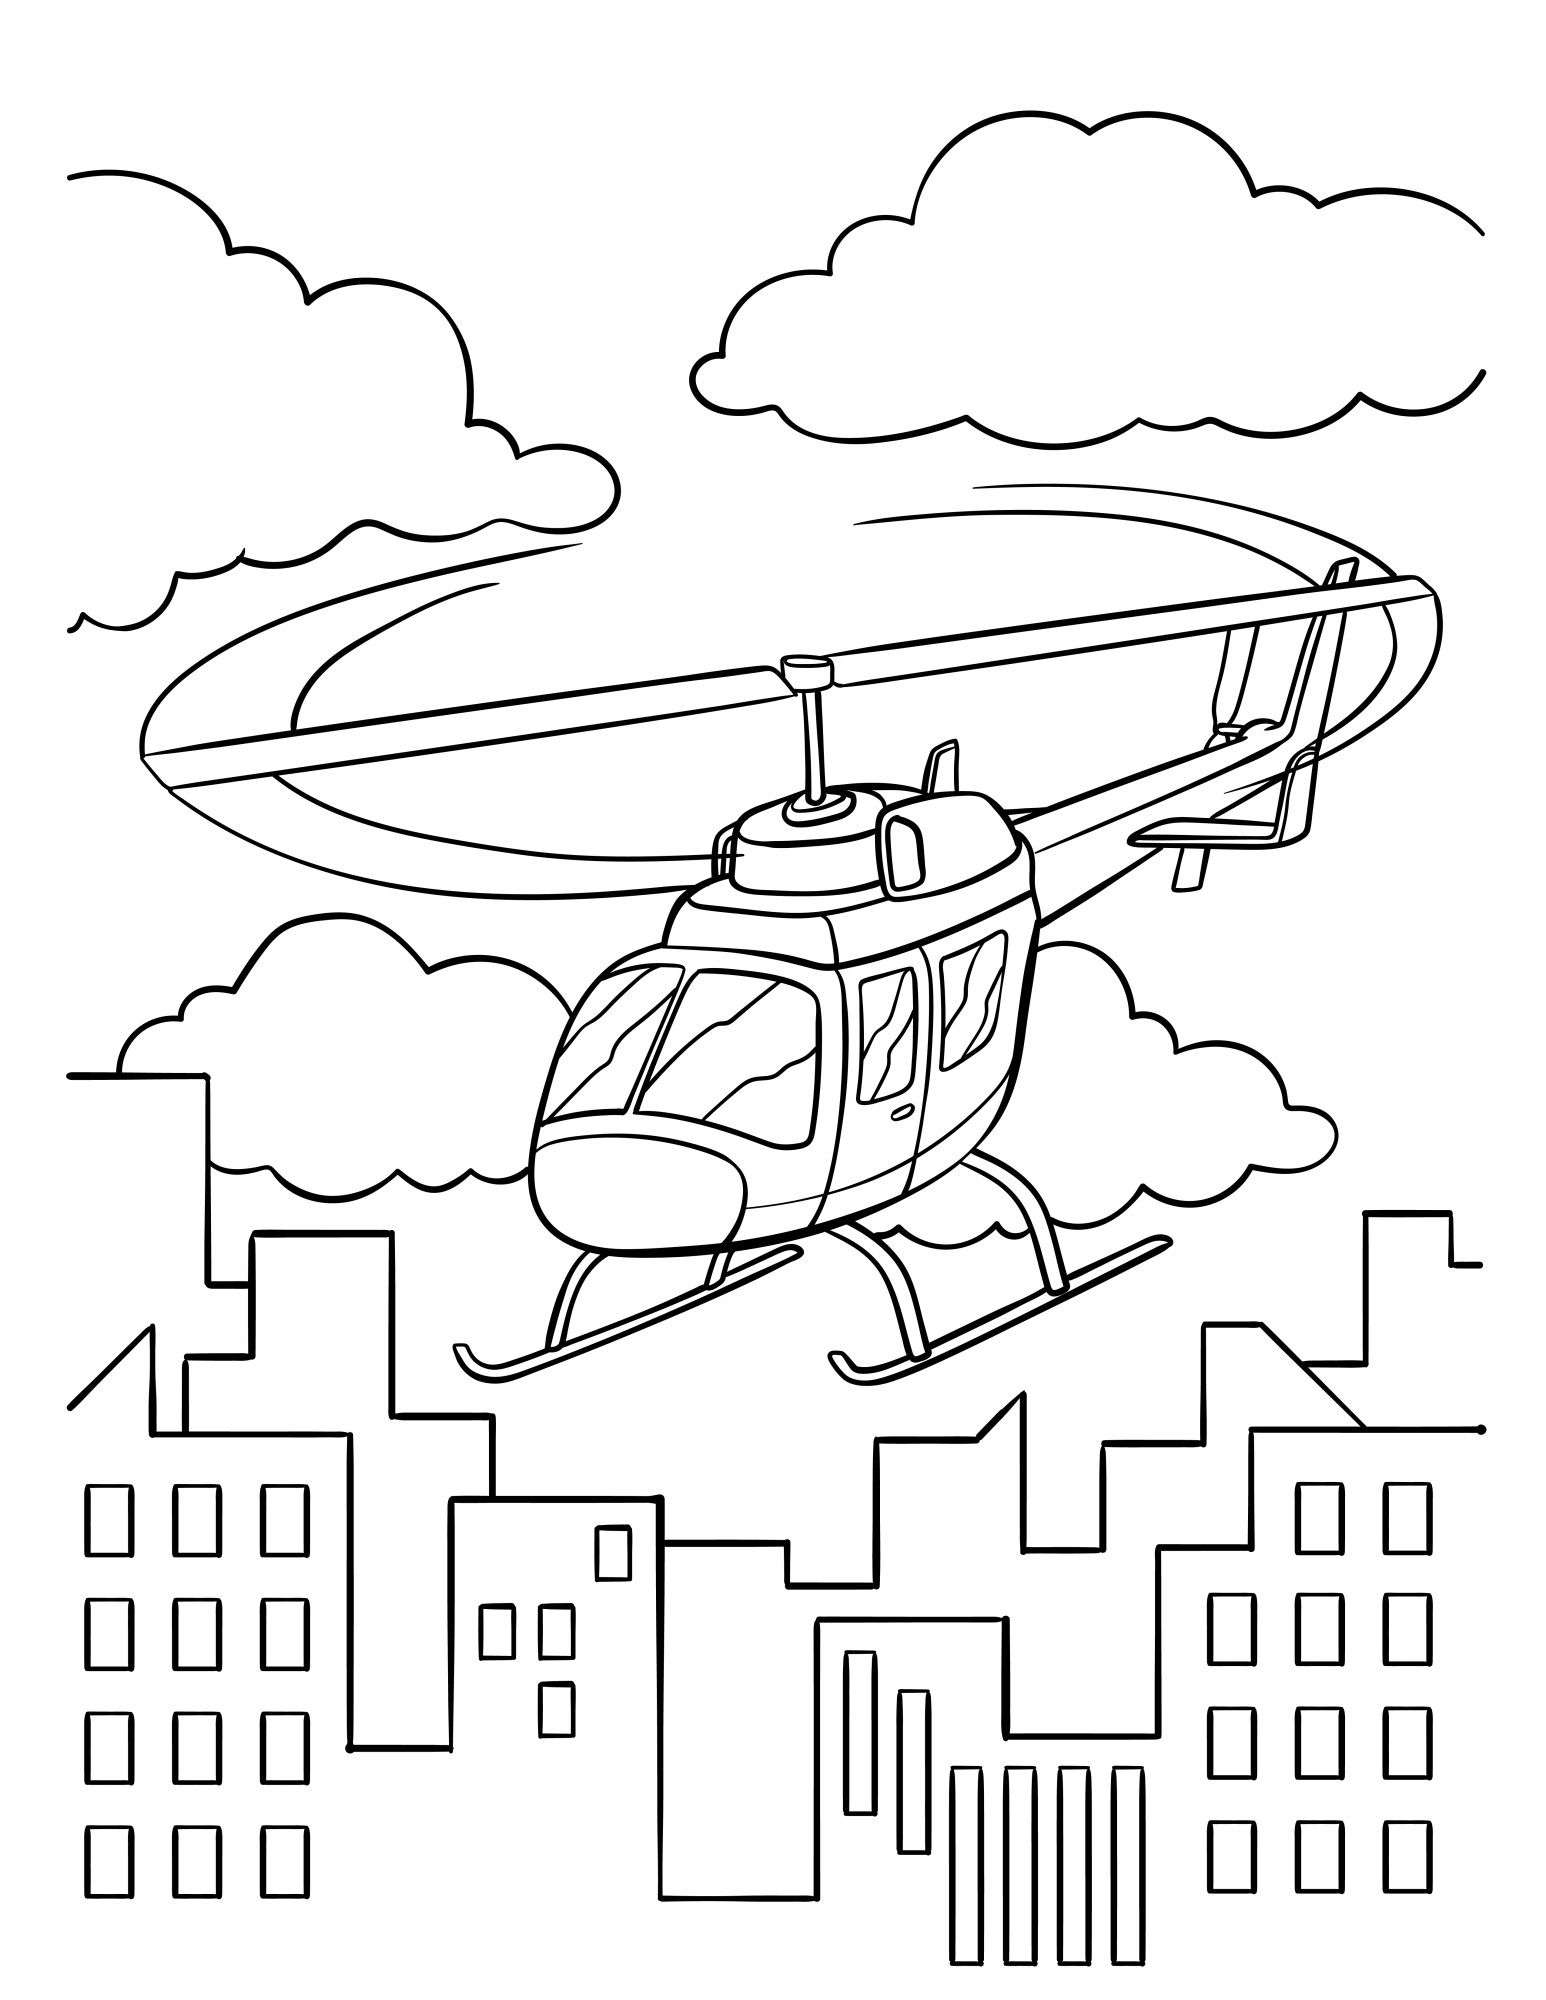 Раскраска для детей: вертолет летит над городом